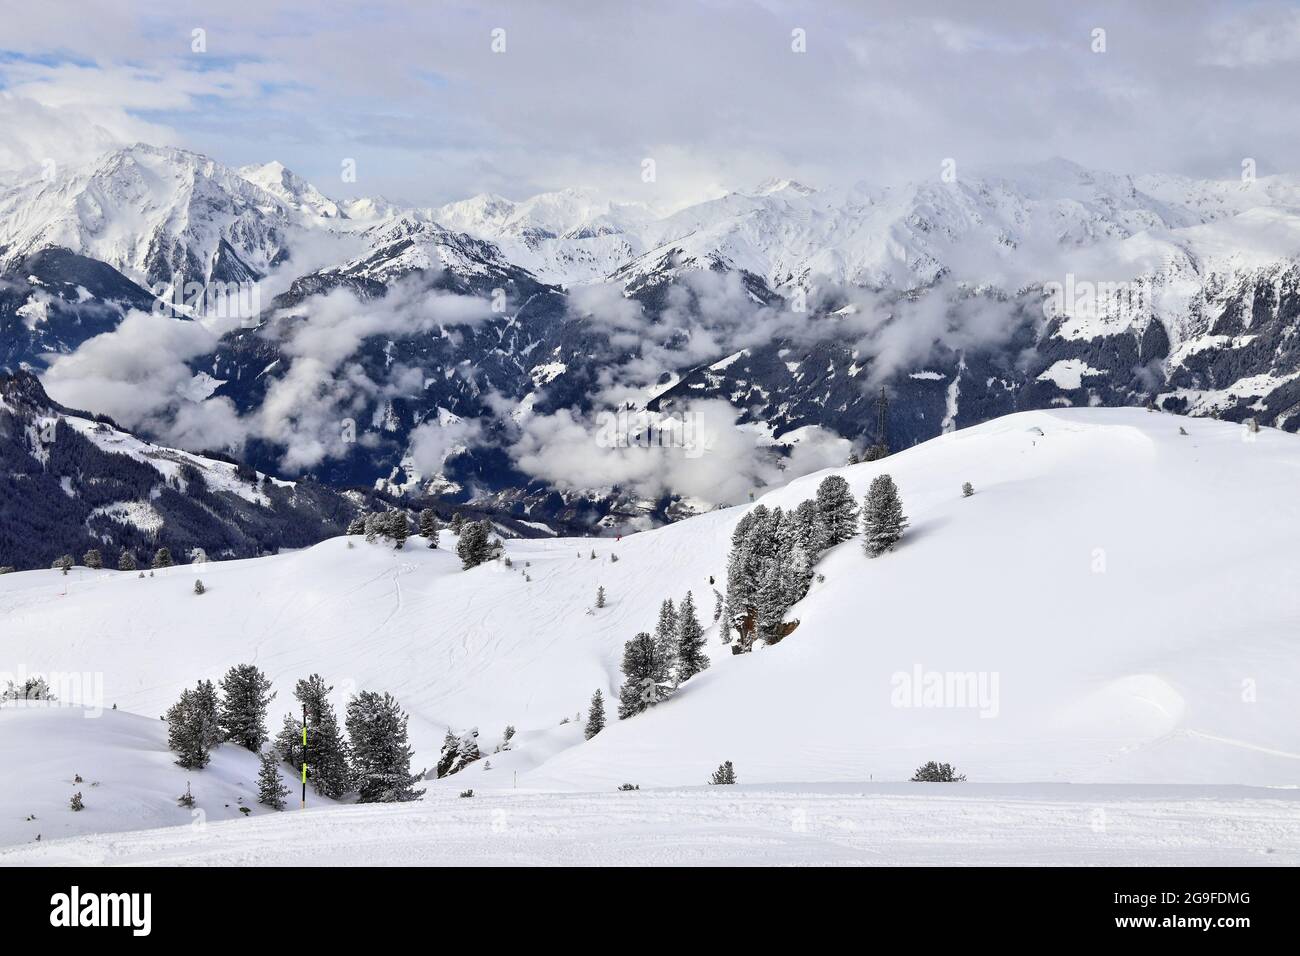 Autriche - Zell am Ziller, le Tyrol. Alpes centrale autrichienne. Banque D'Images